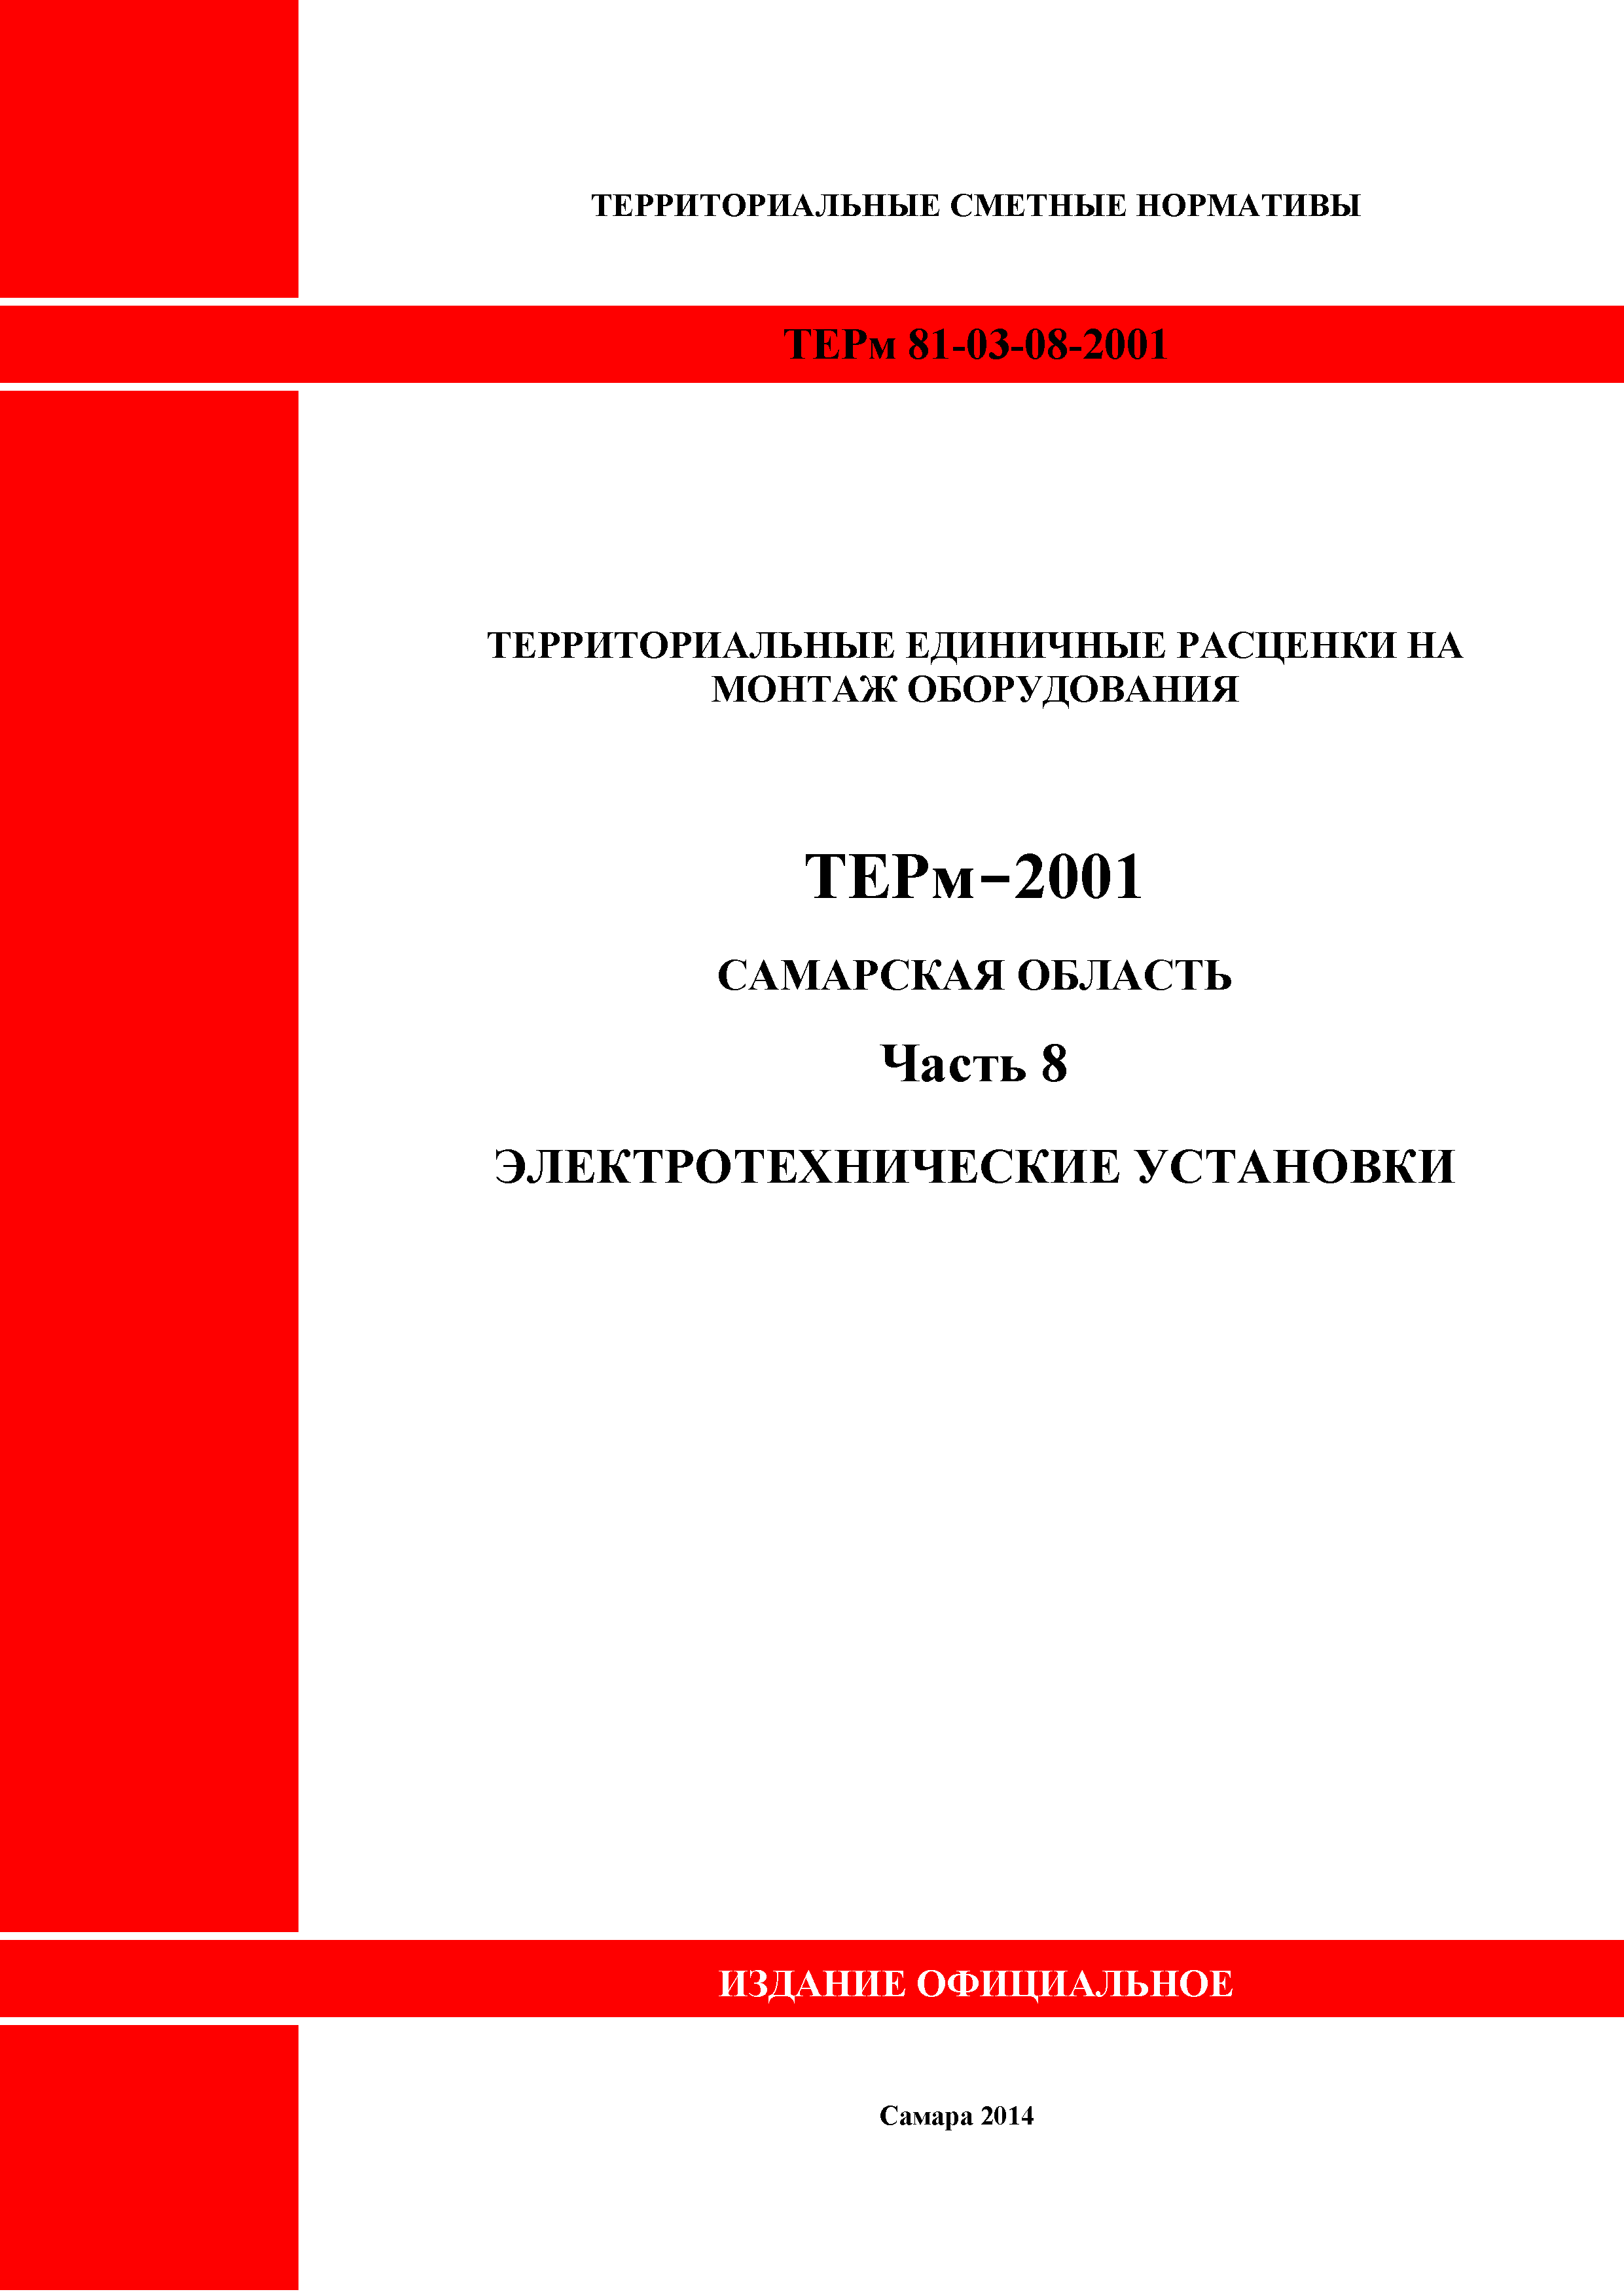 ТЕРм Самарская область 81-03-08-2001